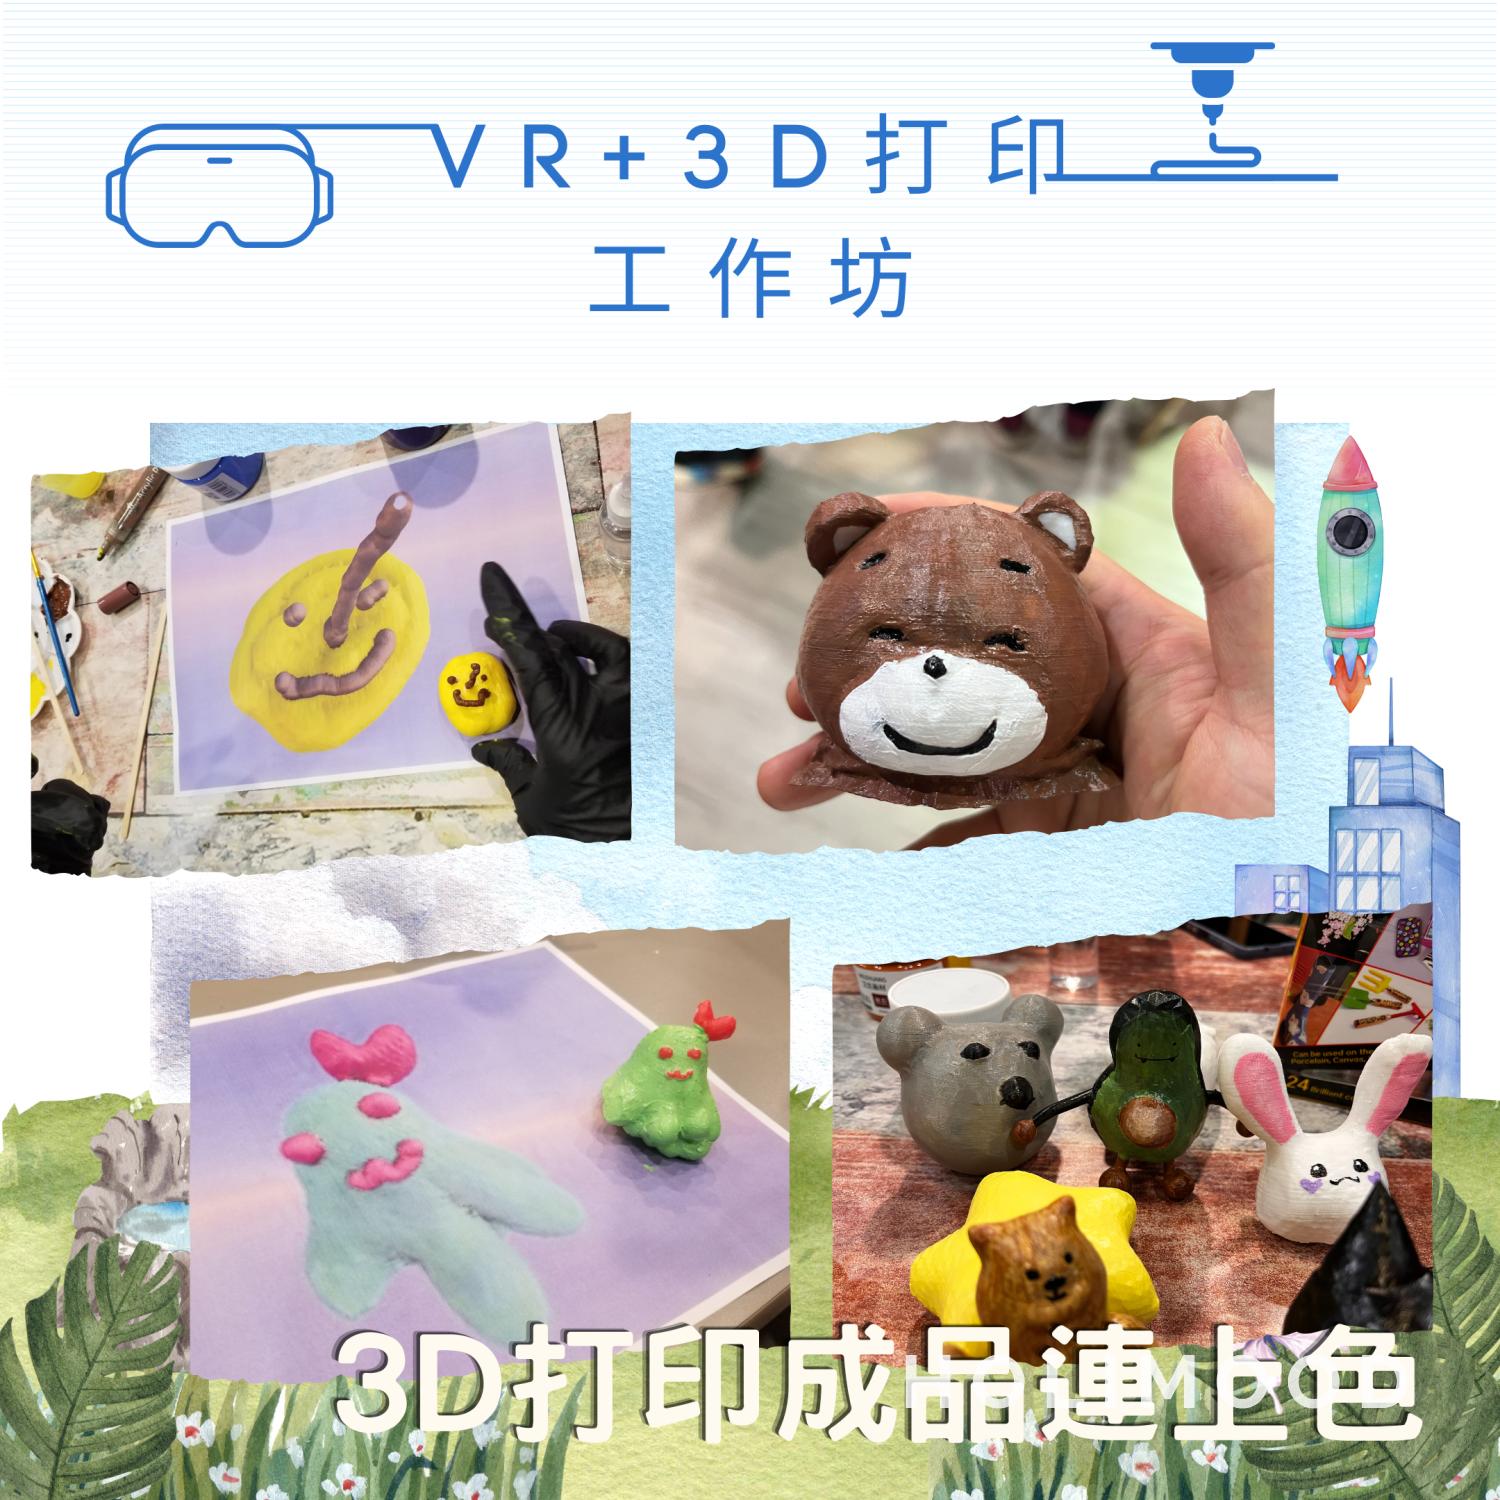 V-Owl Station VR Party 虛擬實境體驗站 VR+3D打印工作坊 3